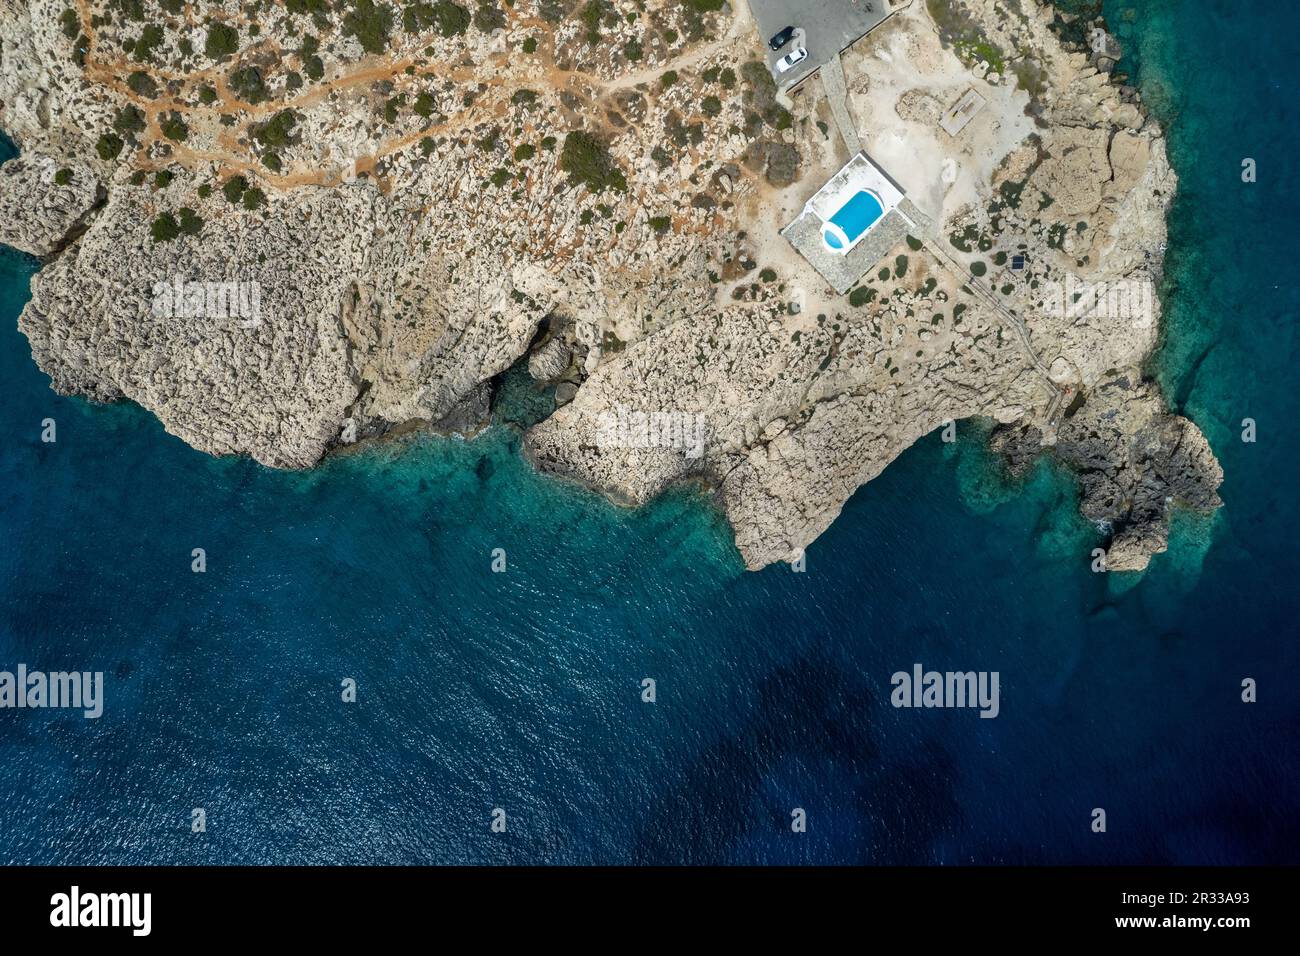 Fotografia aerea del drone della penisola di Capo Greco con la cappella cristiana di Agioi Anargyroi sulle rocce. Acque turchesi dell'oceano, Ayia Napa Cipro Foto Stock